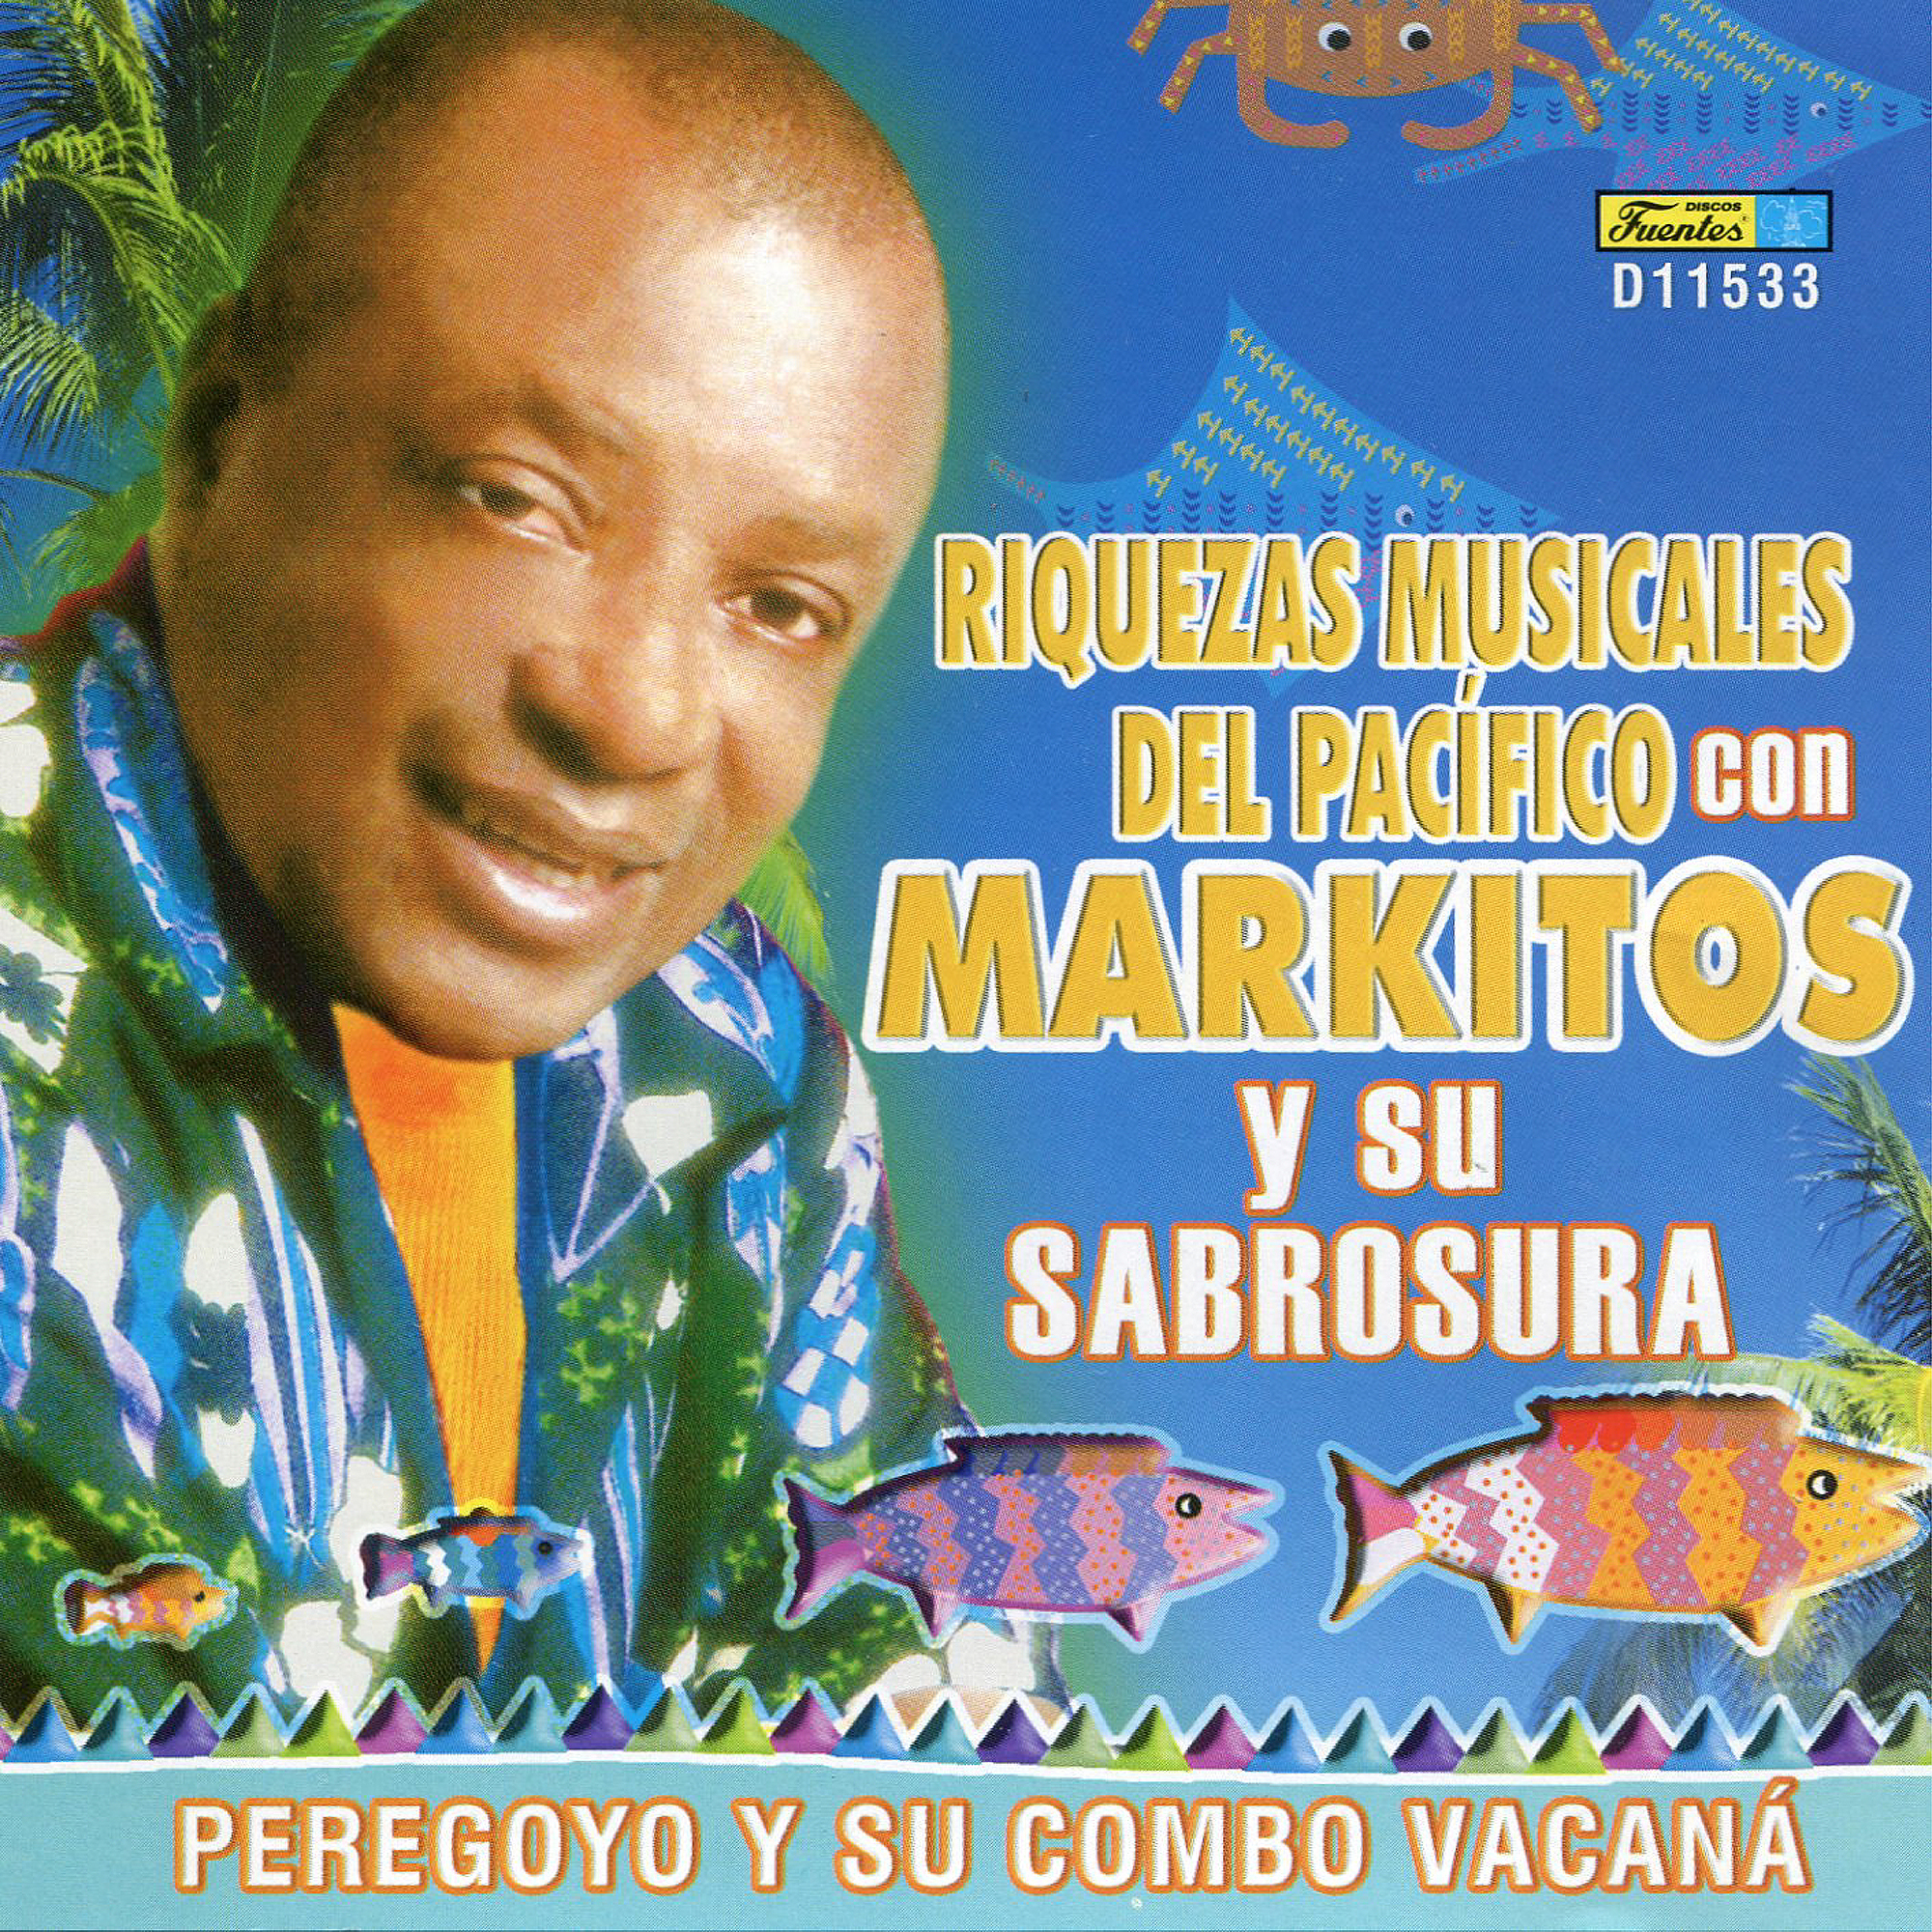 Riquezas Musicales del Pacífico con Markitos Y Su SabrosuraPeregoyo y su combo Vacaná